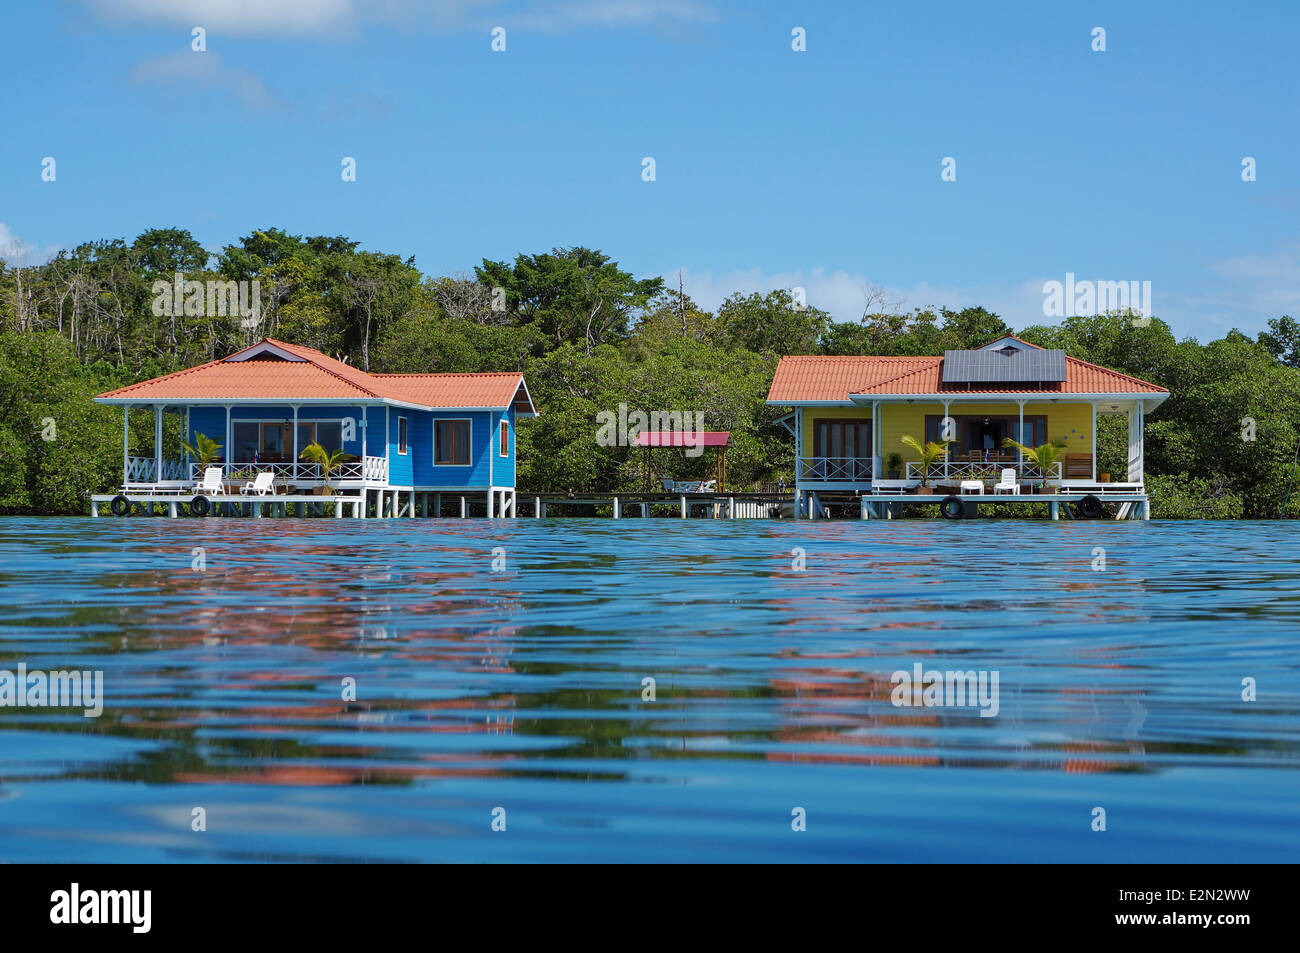 Off grid bungalows sur pilotis, une avec des panneaux solaires, la mer des Caraïbes, le Panama Banque D'Images